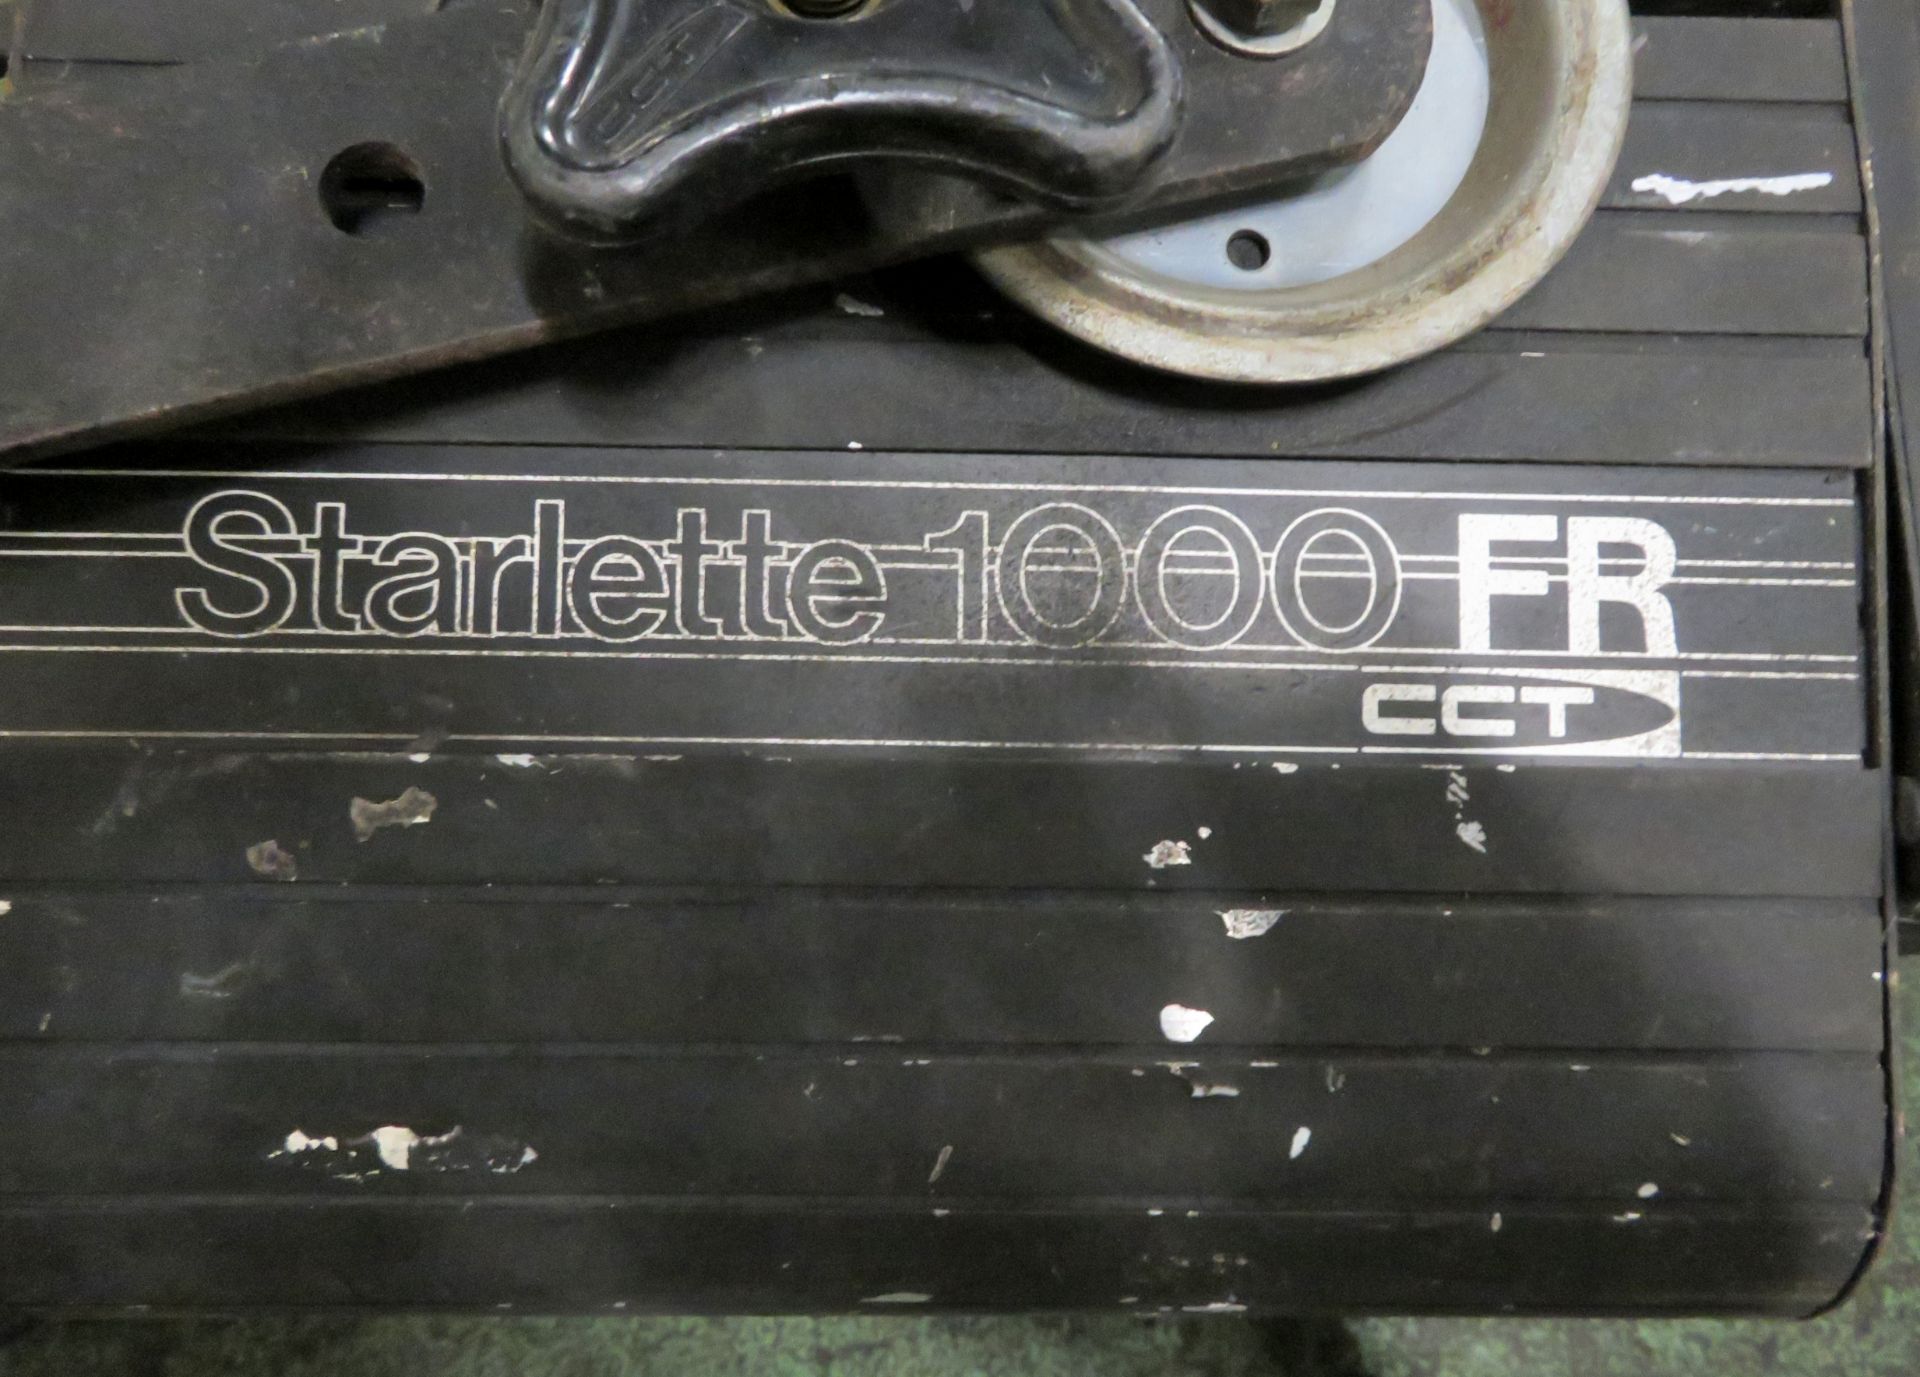 2x CCT Starlette 1000FR Starlette Fresnels. - Image 2 of 3